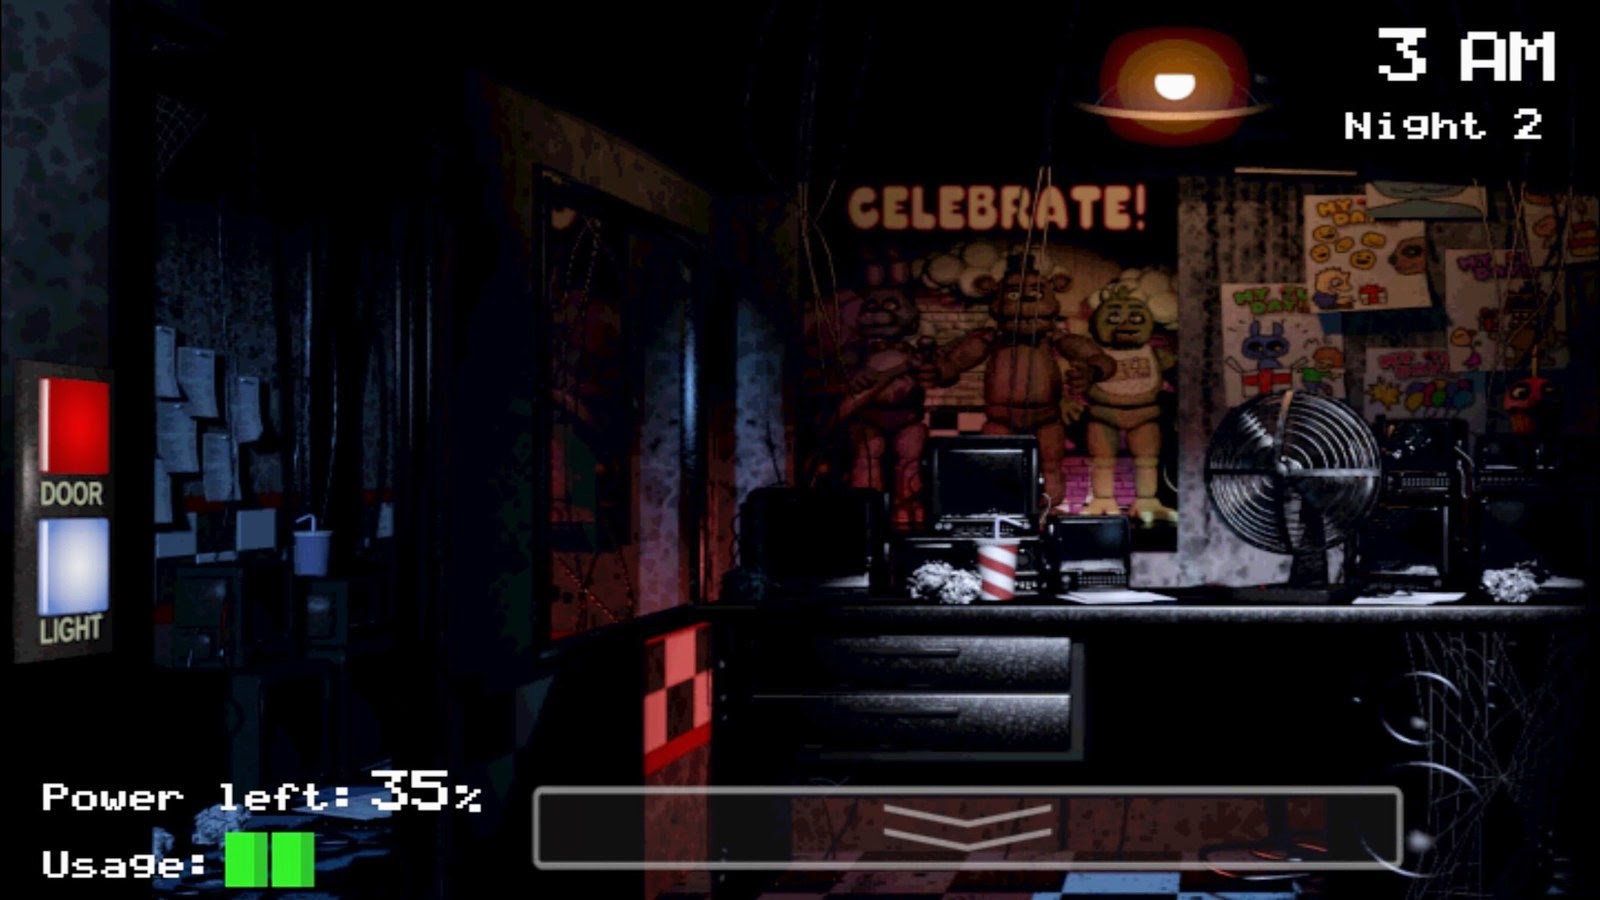 Jogo de terror Five Nights at Freddy's 4 é lançado de surpresa para PC